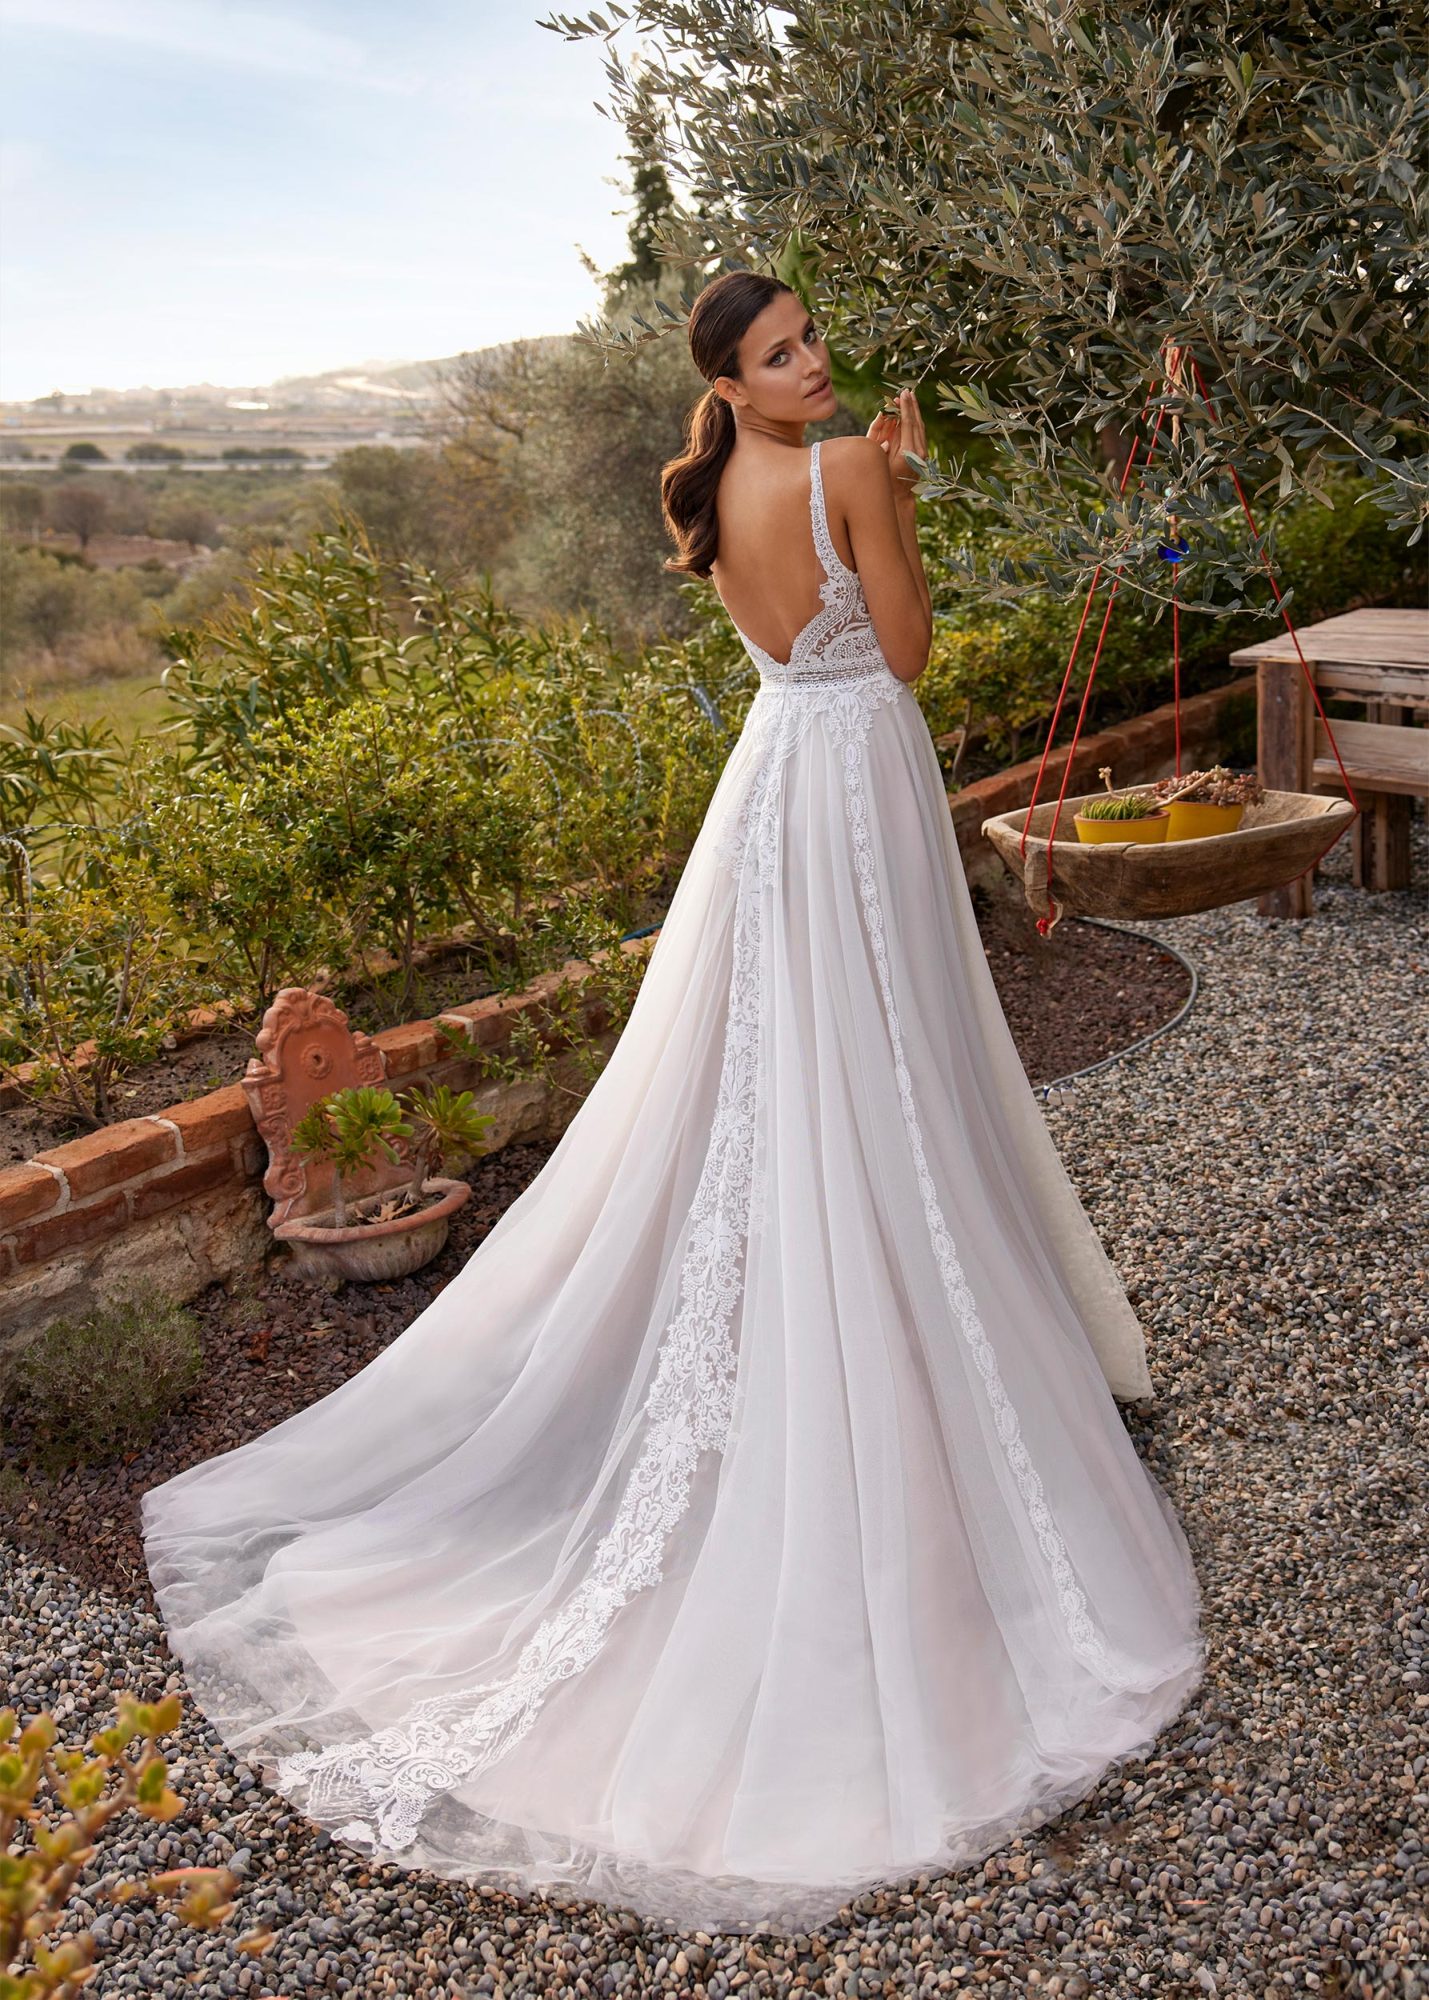 Bohemian-Brautkleid in Ivory mit Tüll und Spitze und wunderschönem Rückenausschnitt.